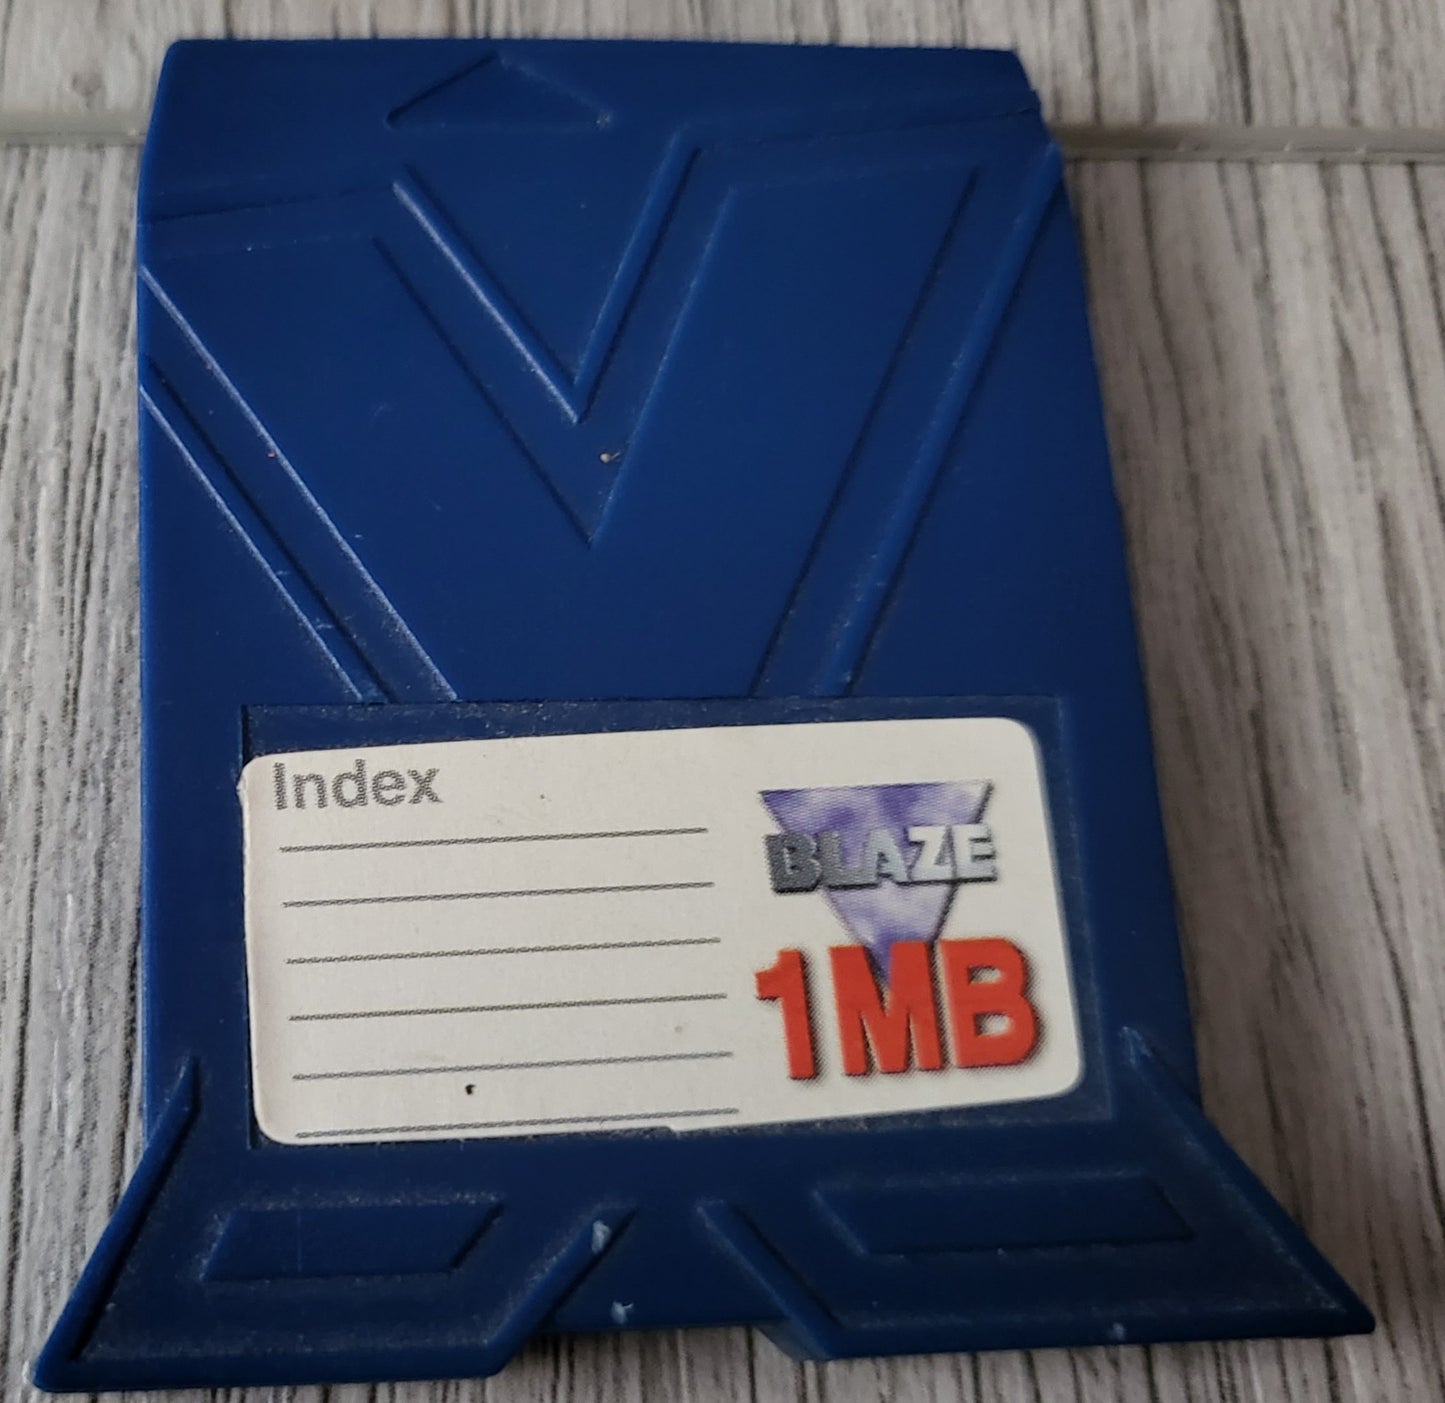 Blaze 1 MB Memory Card Sony Playstation 1 (PS1) Accessory